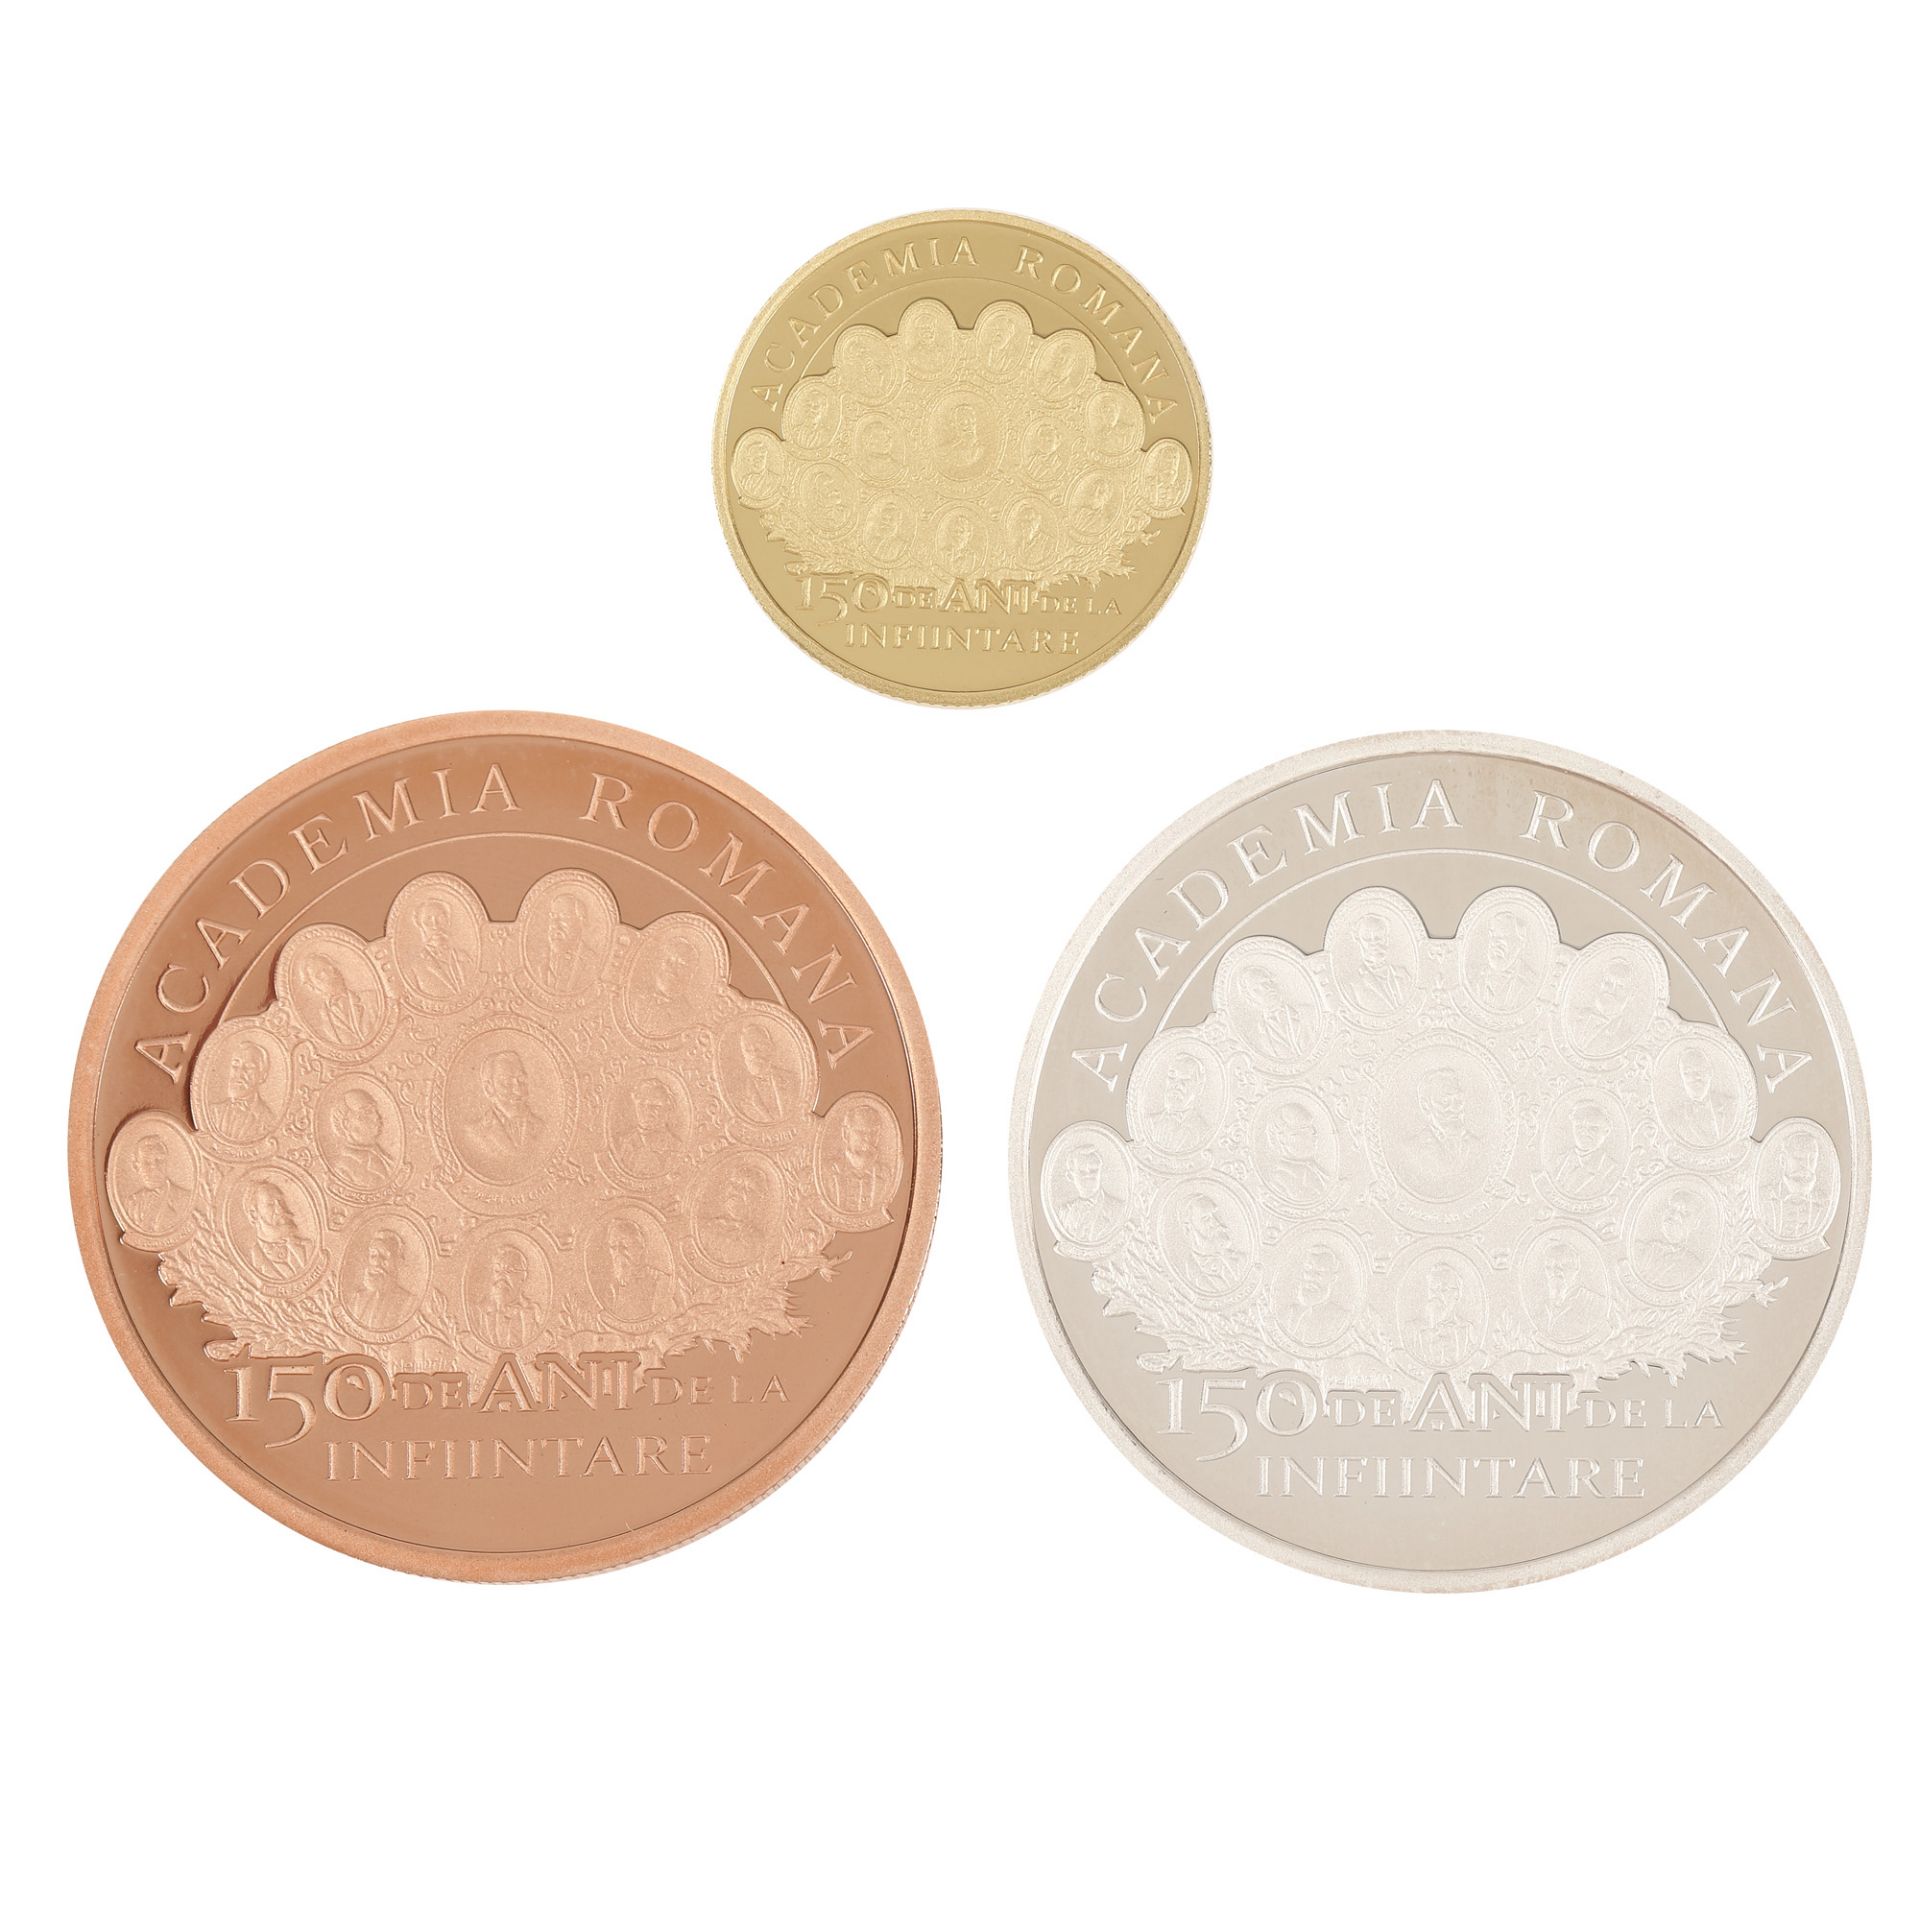 Three BNR coin, 150 - Romanian Academy, 2016